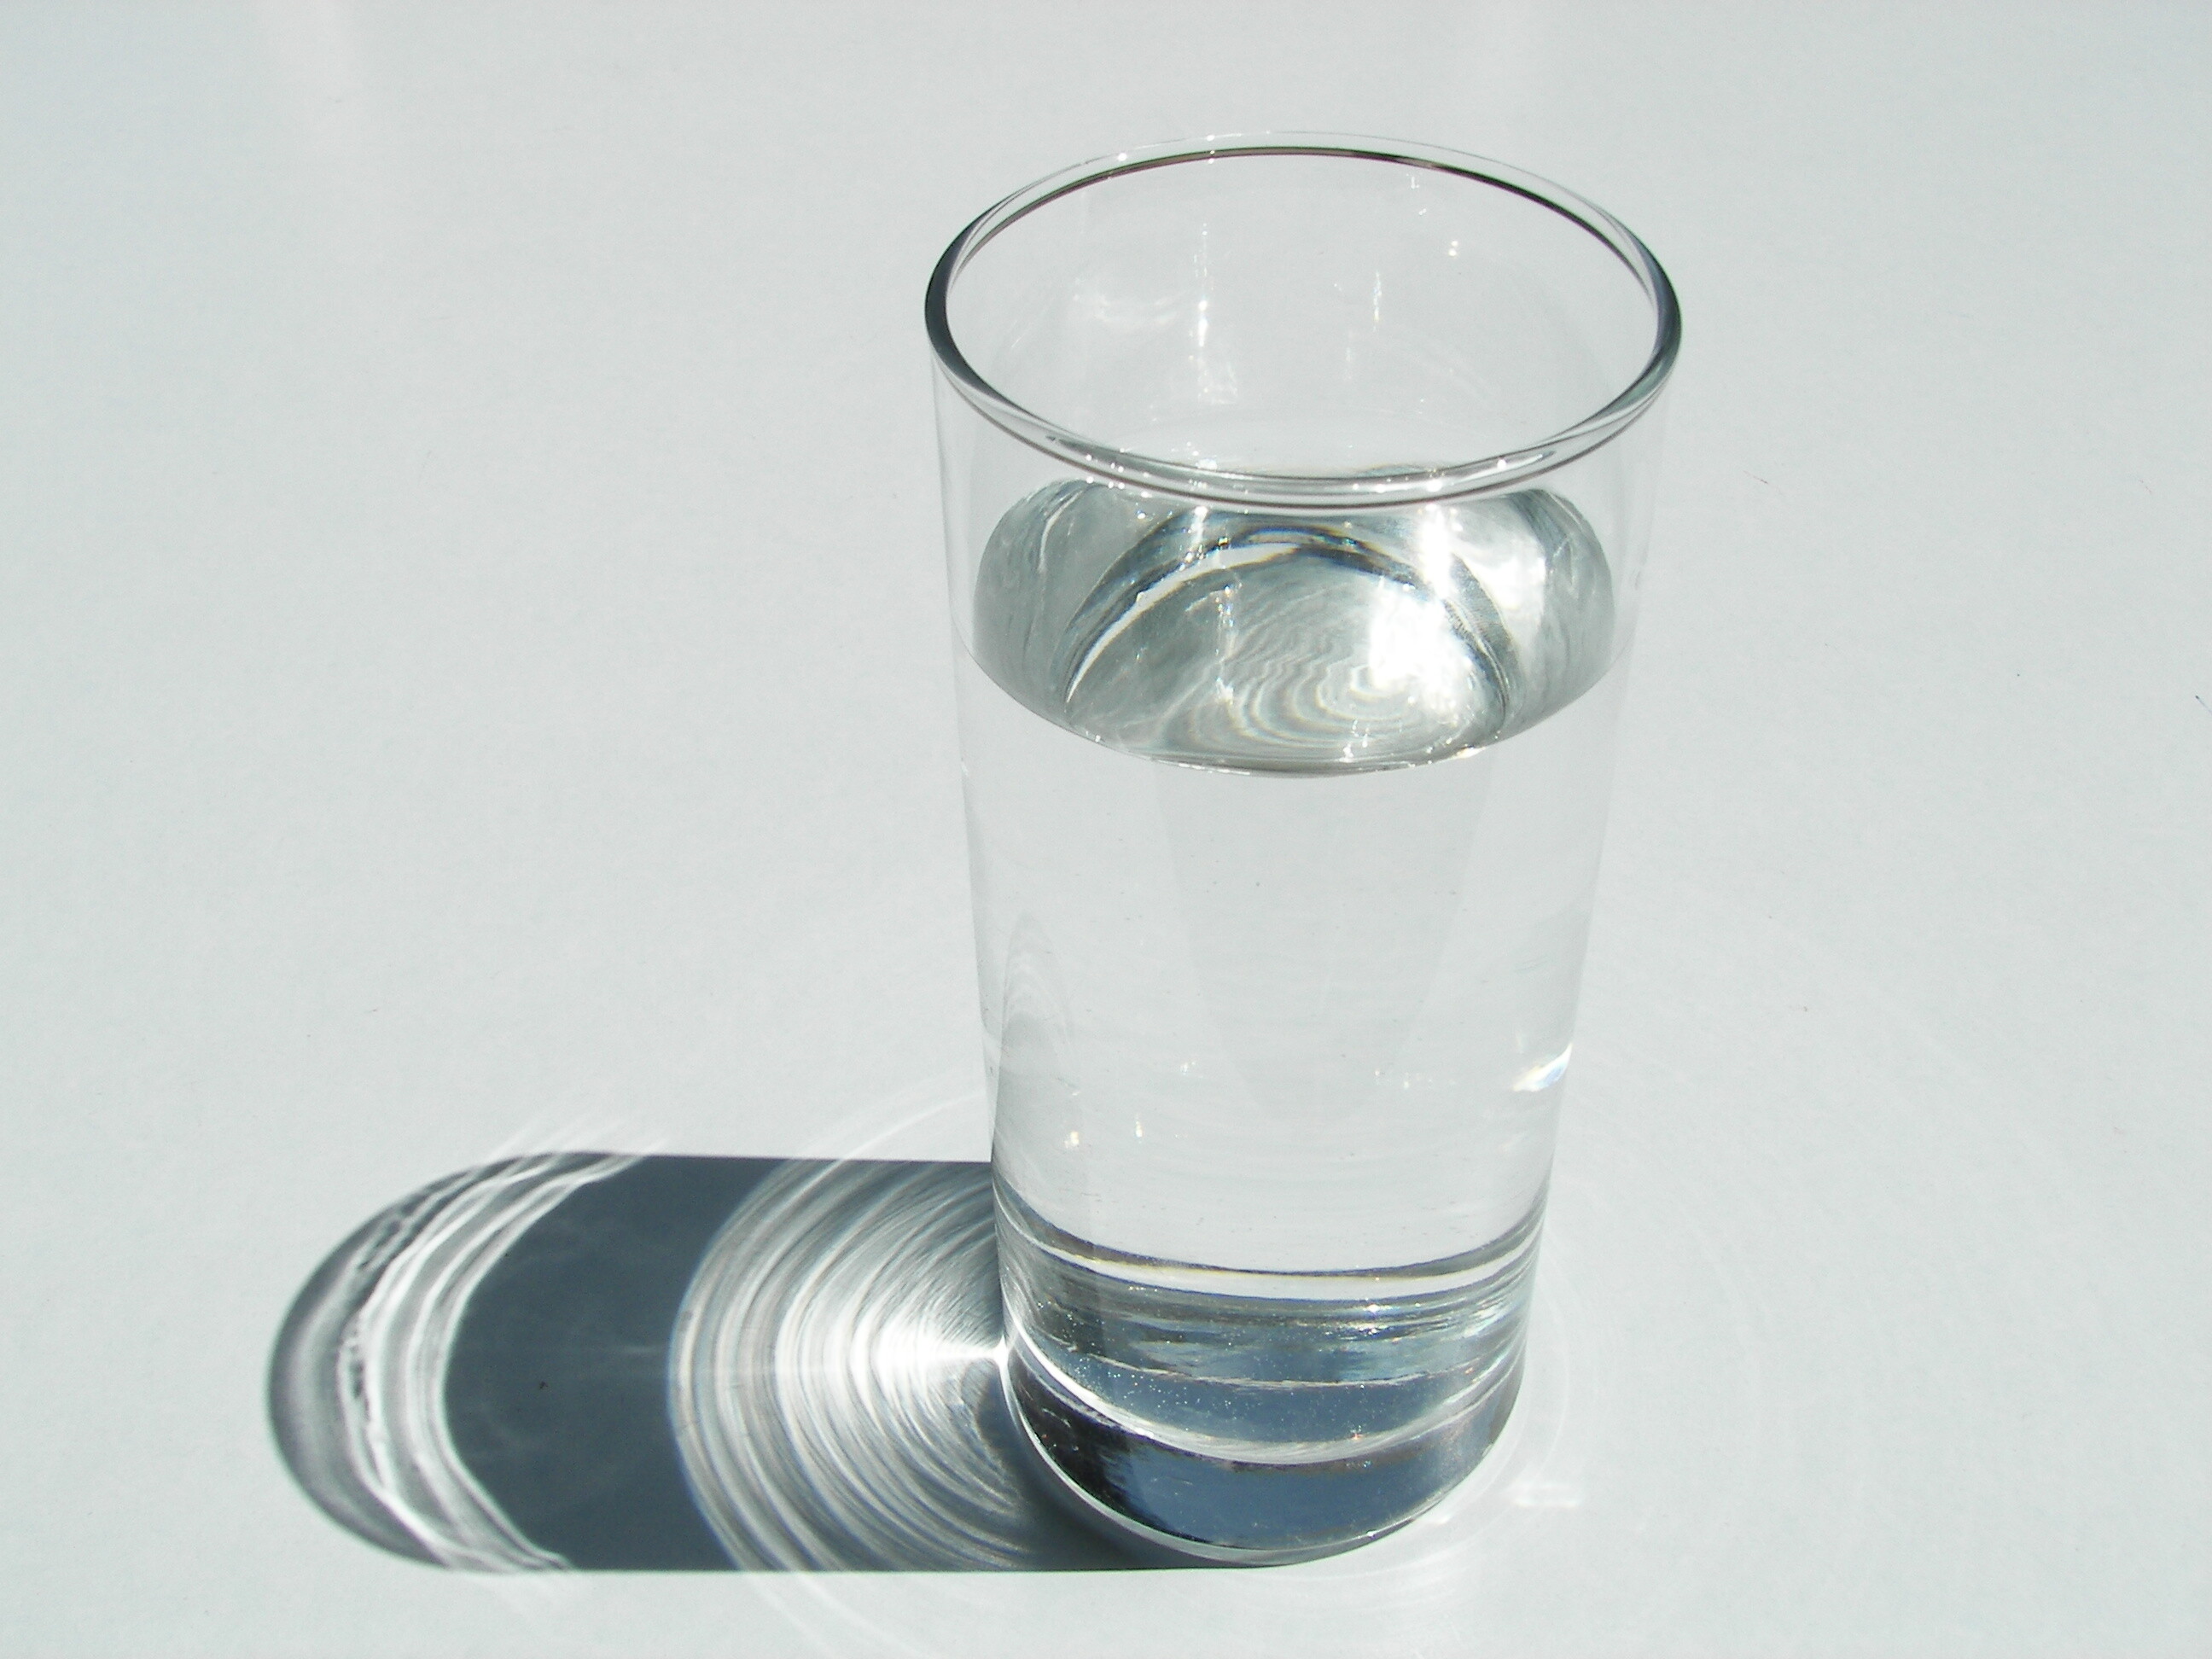 Выпейте стакан воды 1. Стакан воды. Стаканы для воды стеклянные. Стакан с жидкостью. Стакан воды на столе.